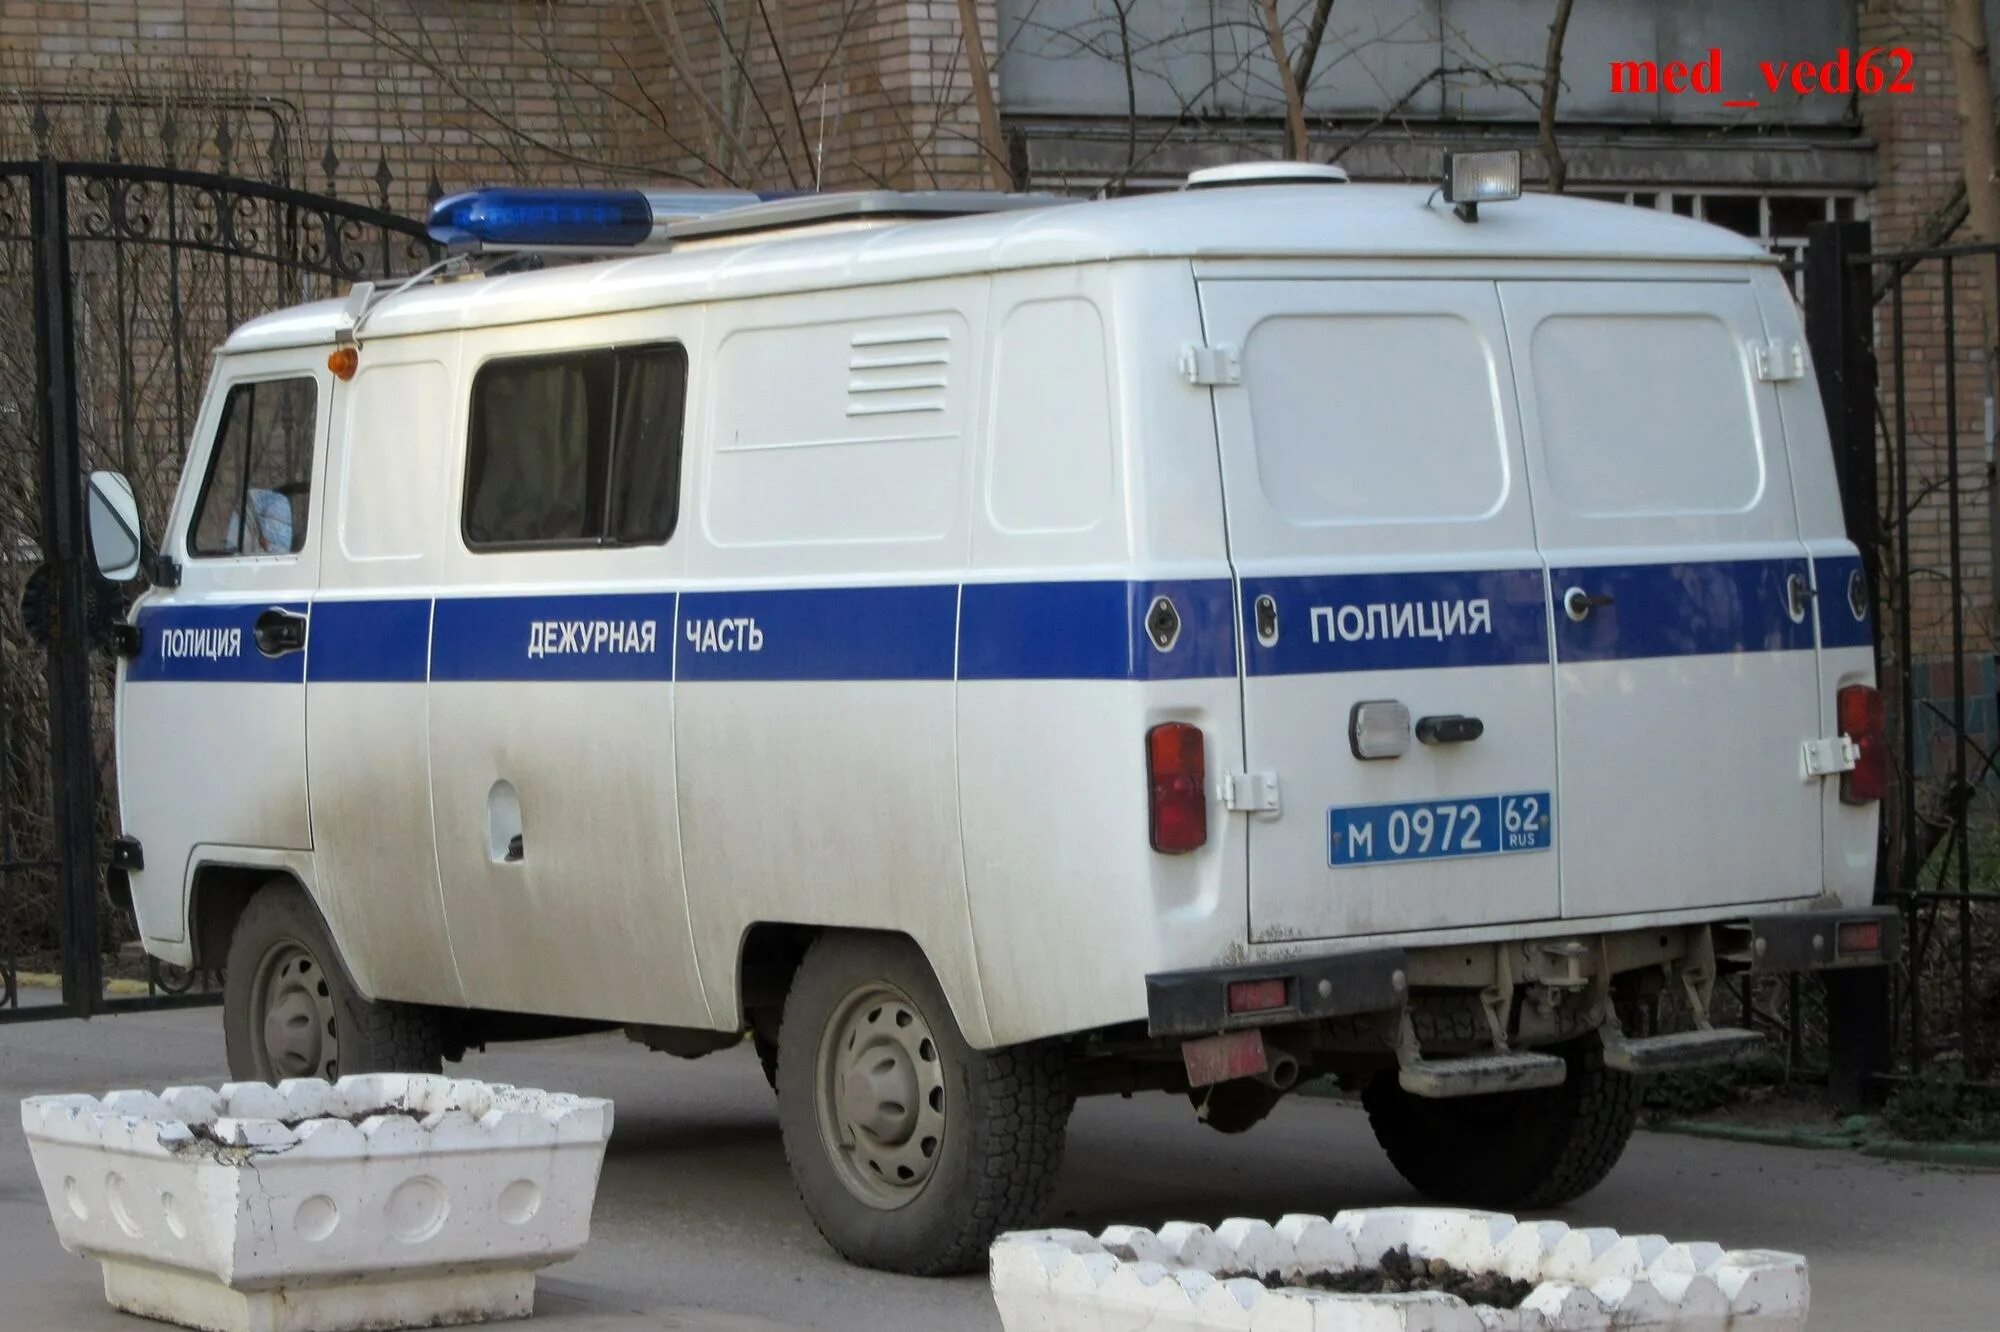 Дежурная часть новосибирск телефон. УАЗ 3909 полиция. УАЗ 3909 милиция. УАЗ 3909 ППС. УАЗ 452 ППС.